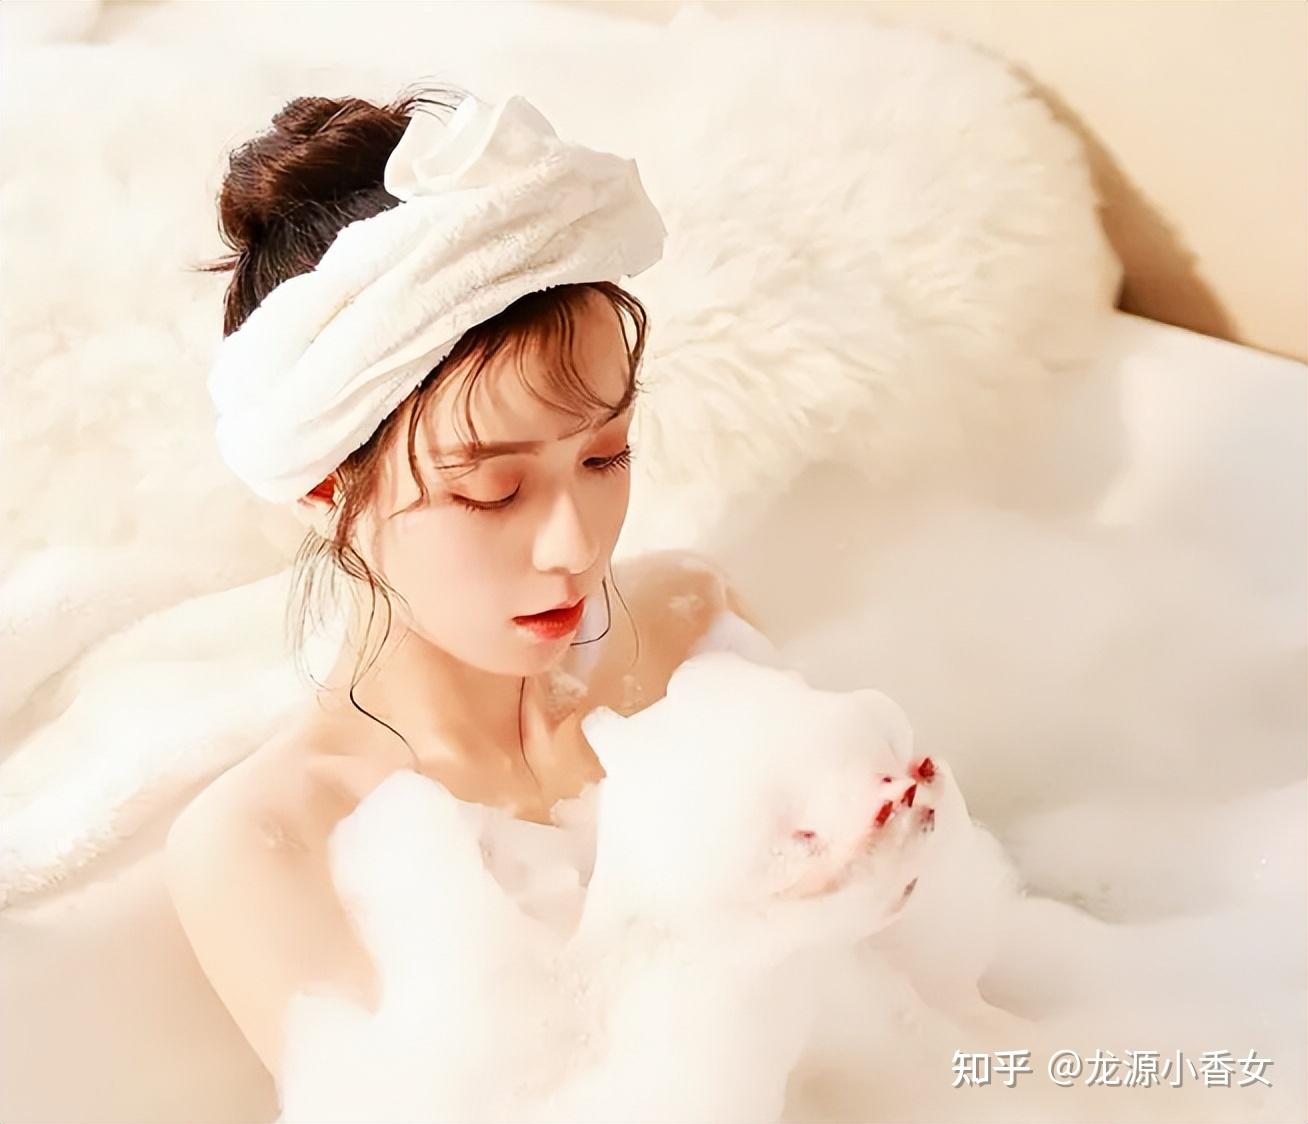 年轻女士在家泡澡-蓝牛仔影像-中国原创广告影像素材